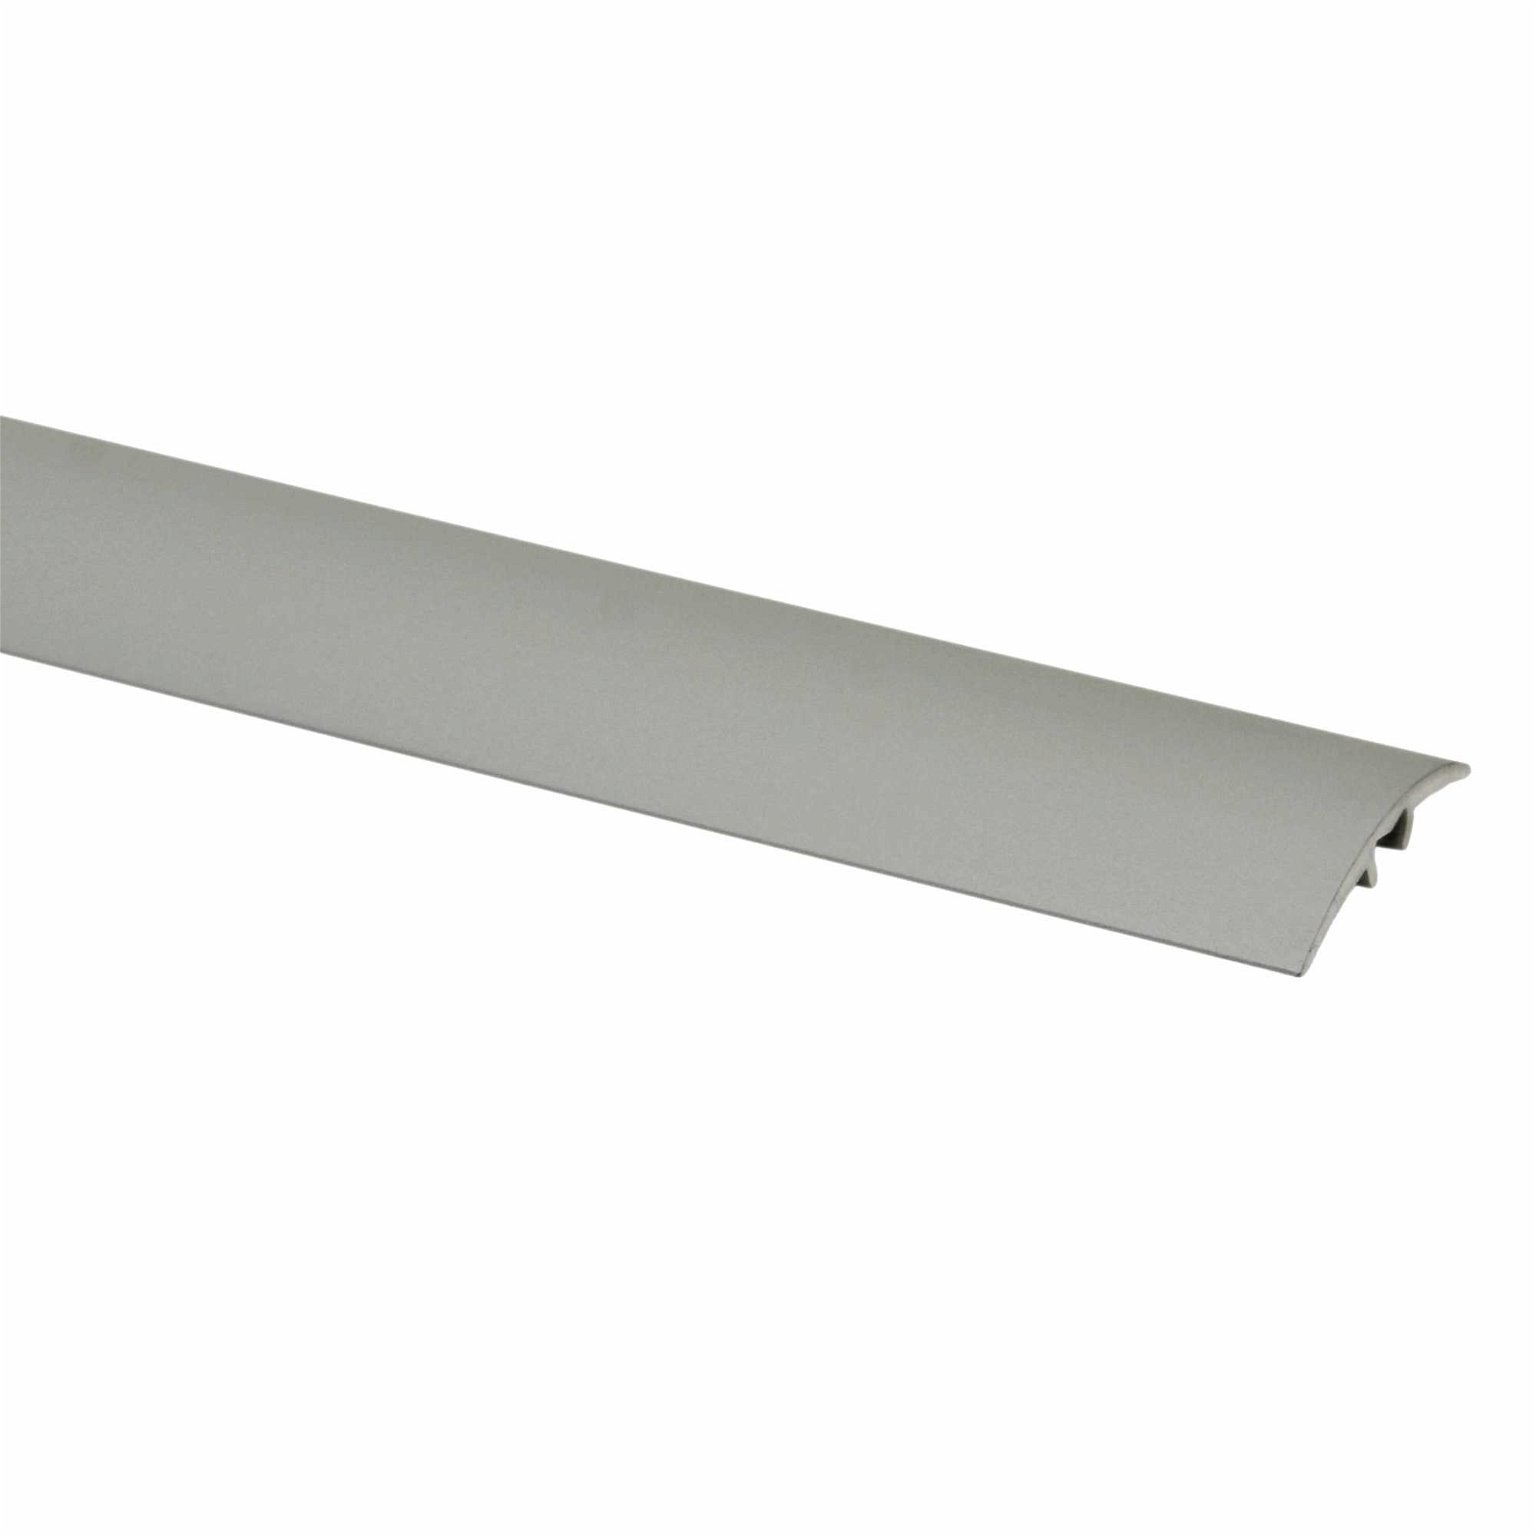 Aliumininė grindų juostelė PR3 A3, titano sp., 28 mm pločio, 186 cm ilgio